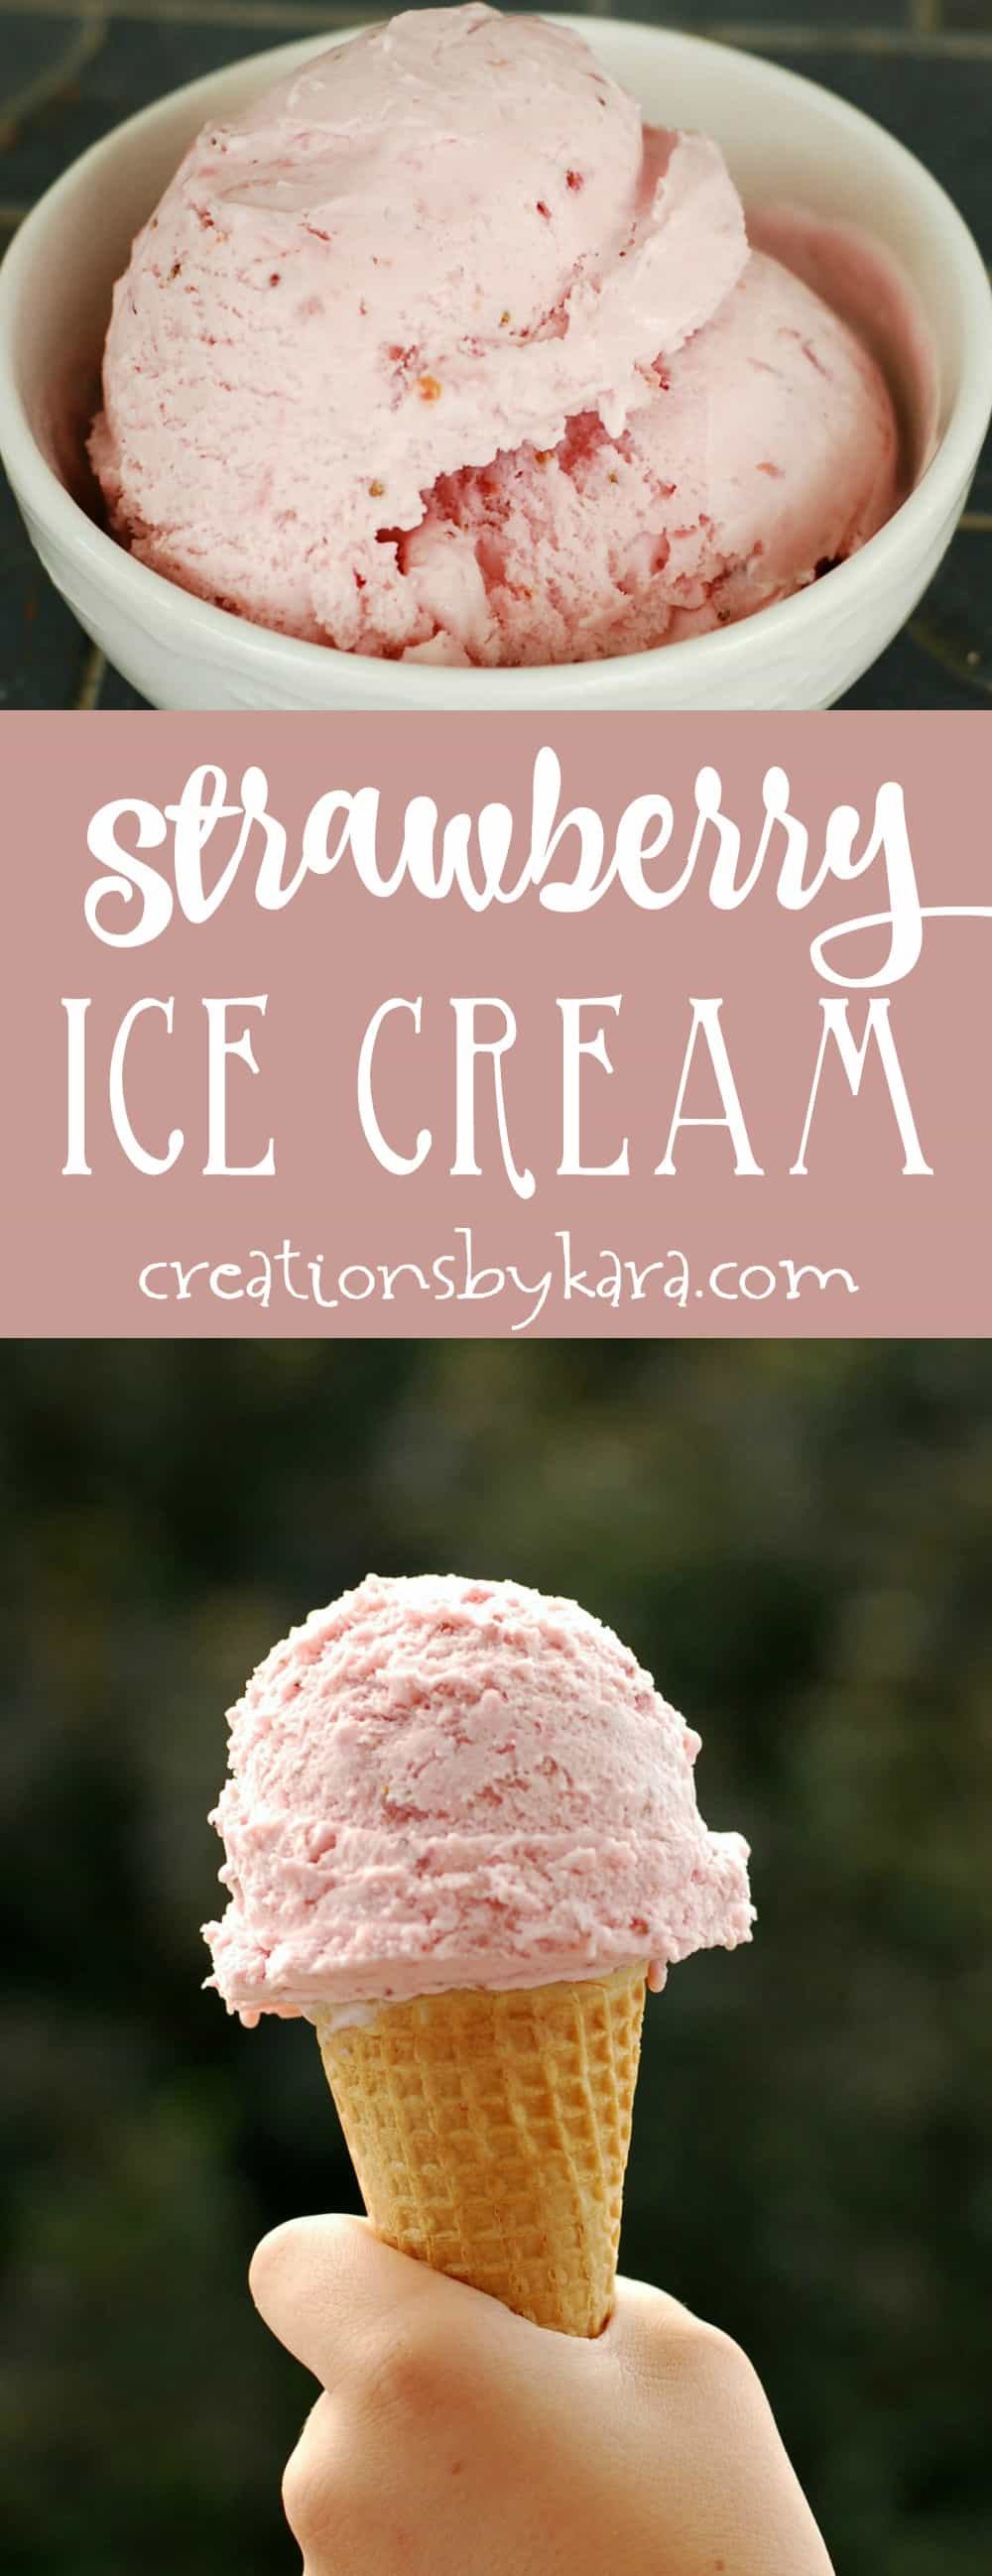 Strawberry ice cream recipe